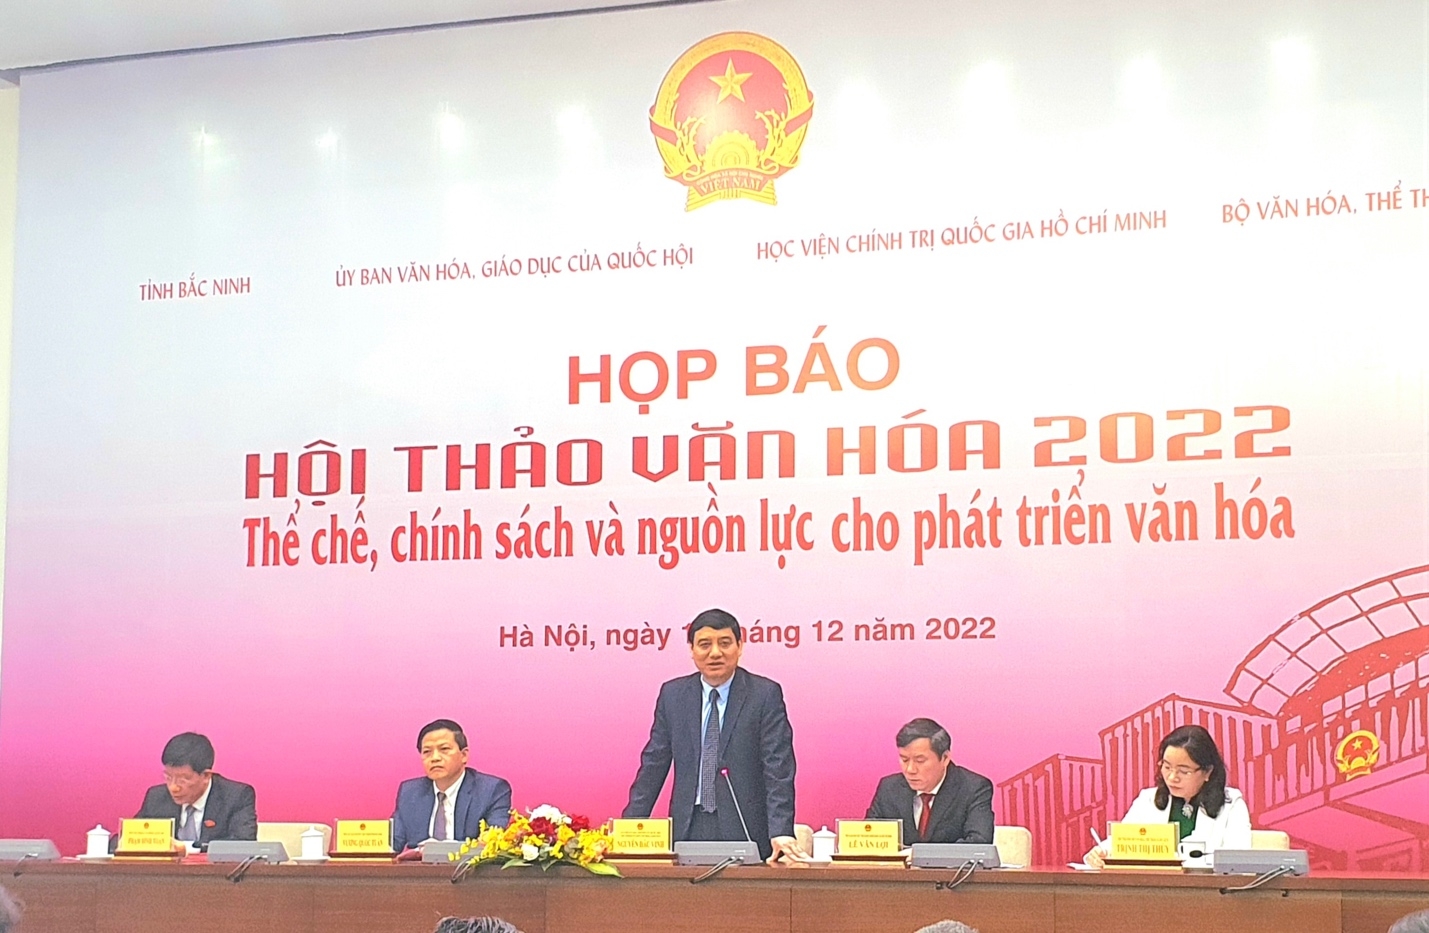 Sắp diễn ra Hội thảo Văn hoá năm 2022 tại thành phố Bắc Ninh